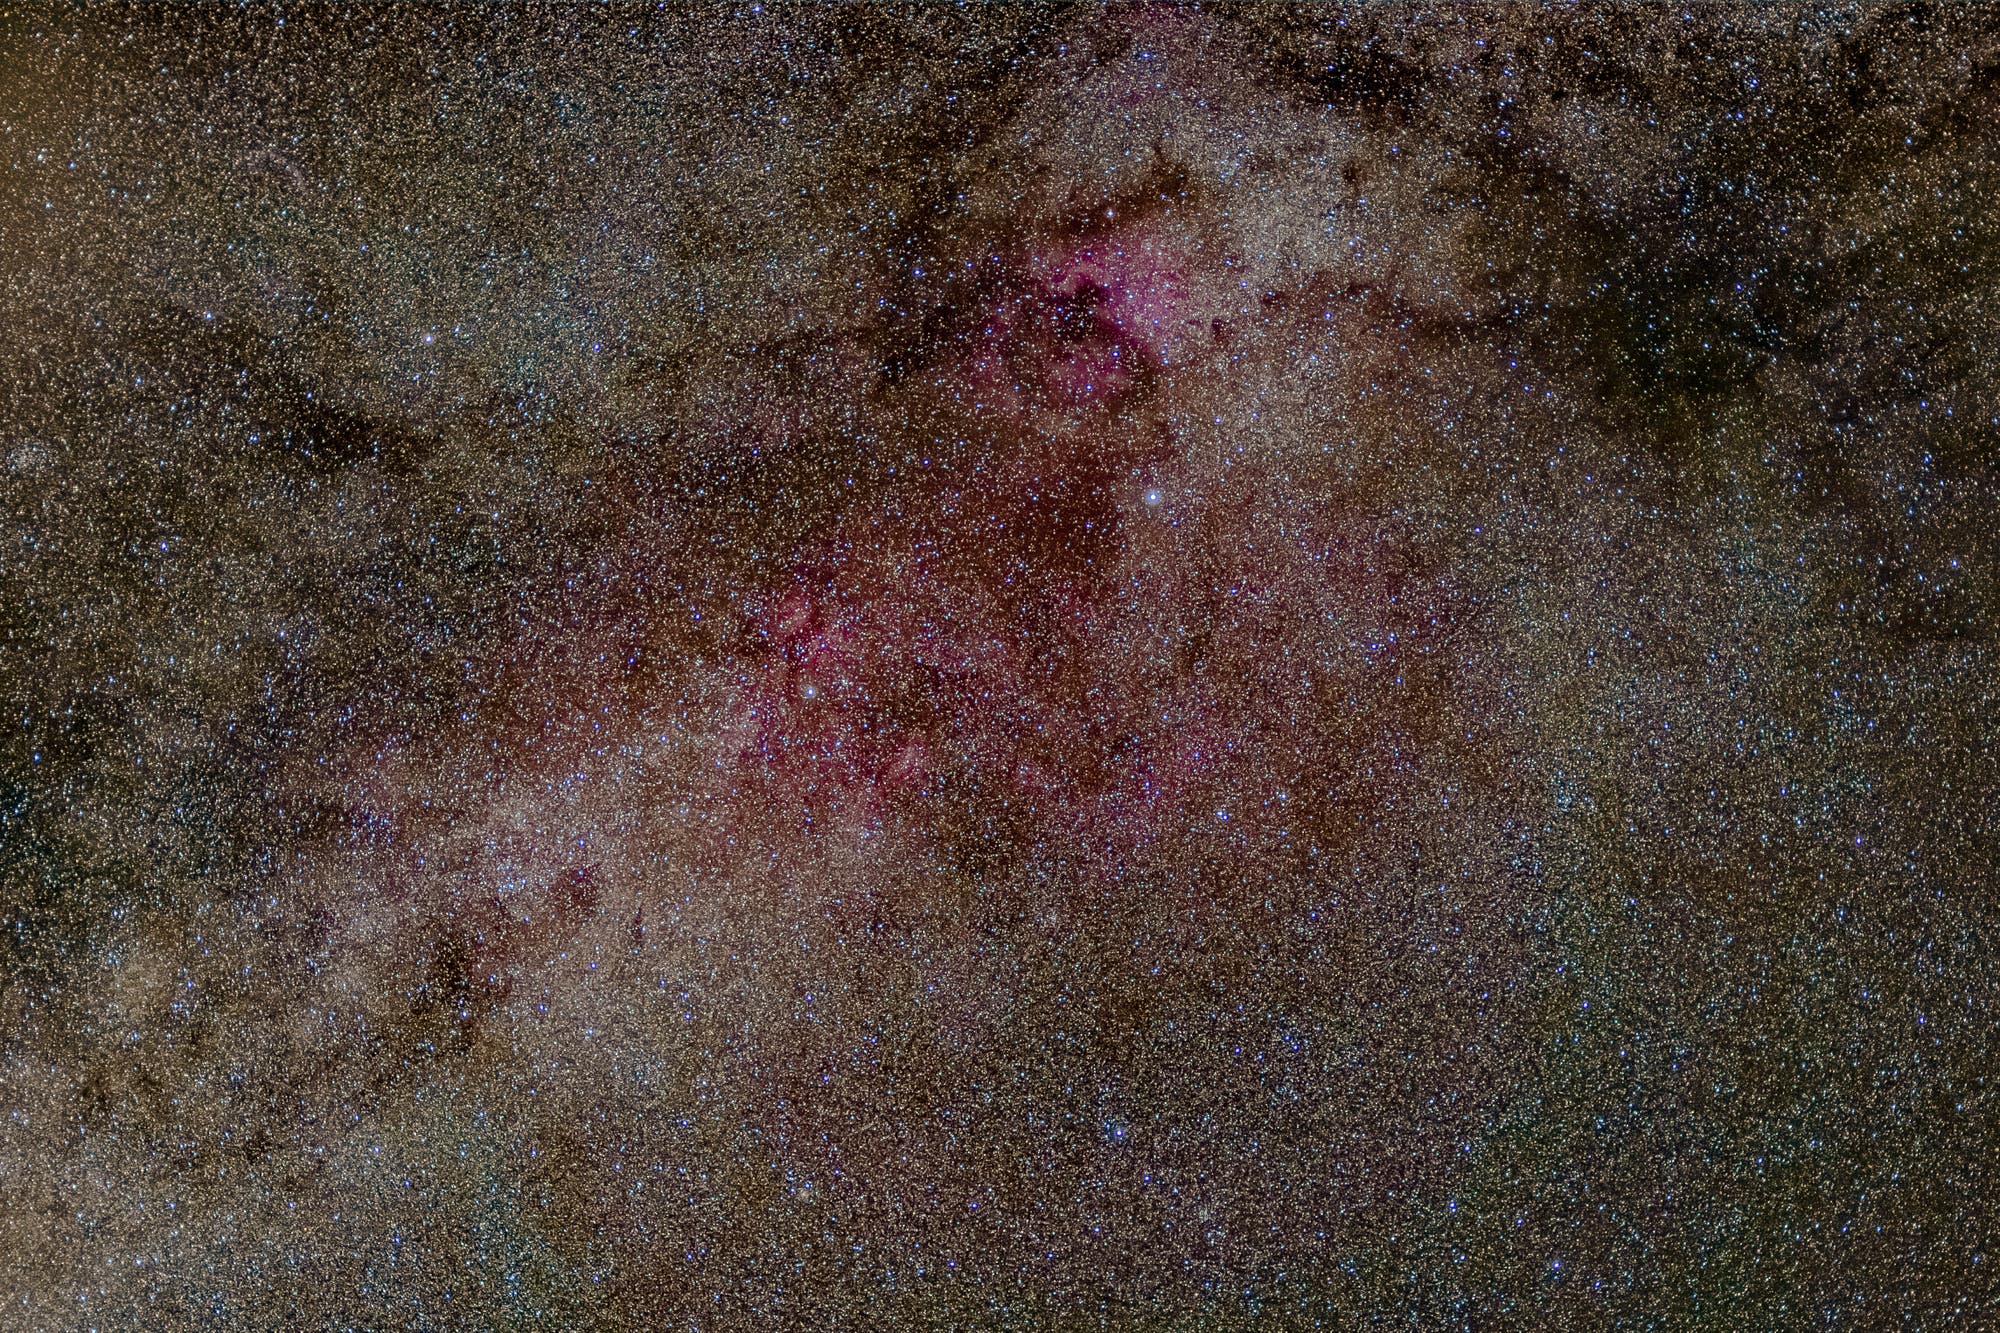 Ausschnitt der Milchstraße im Sternbild Schwan